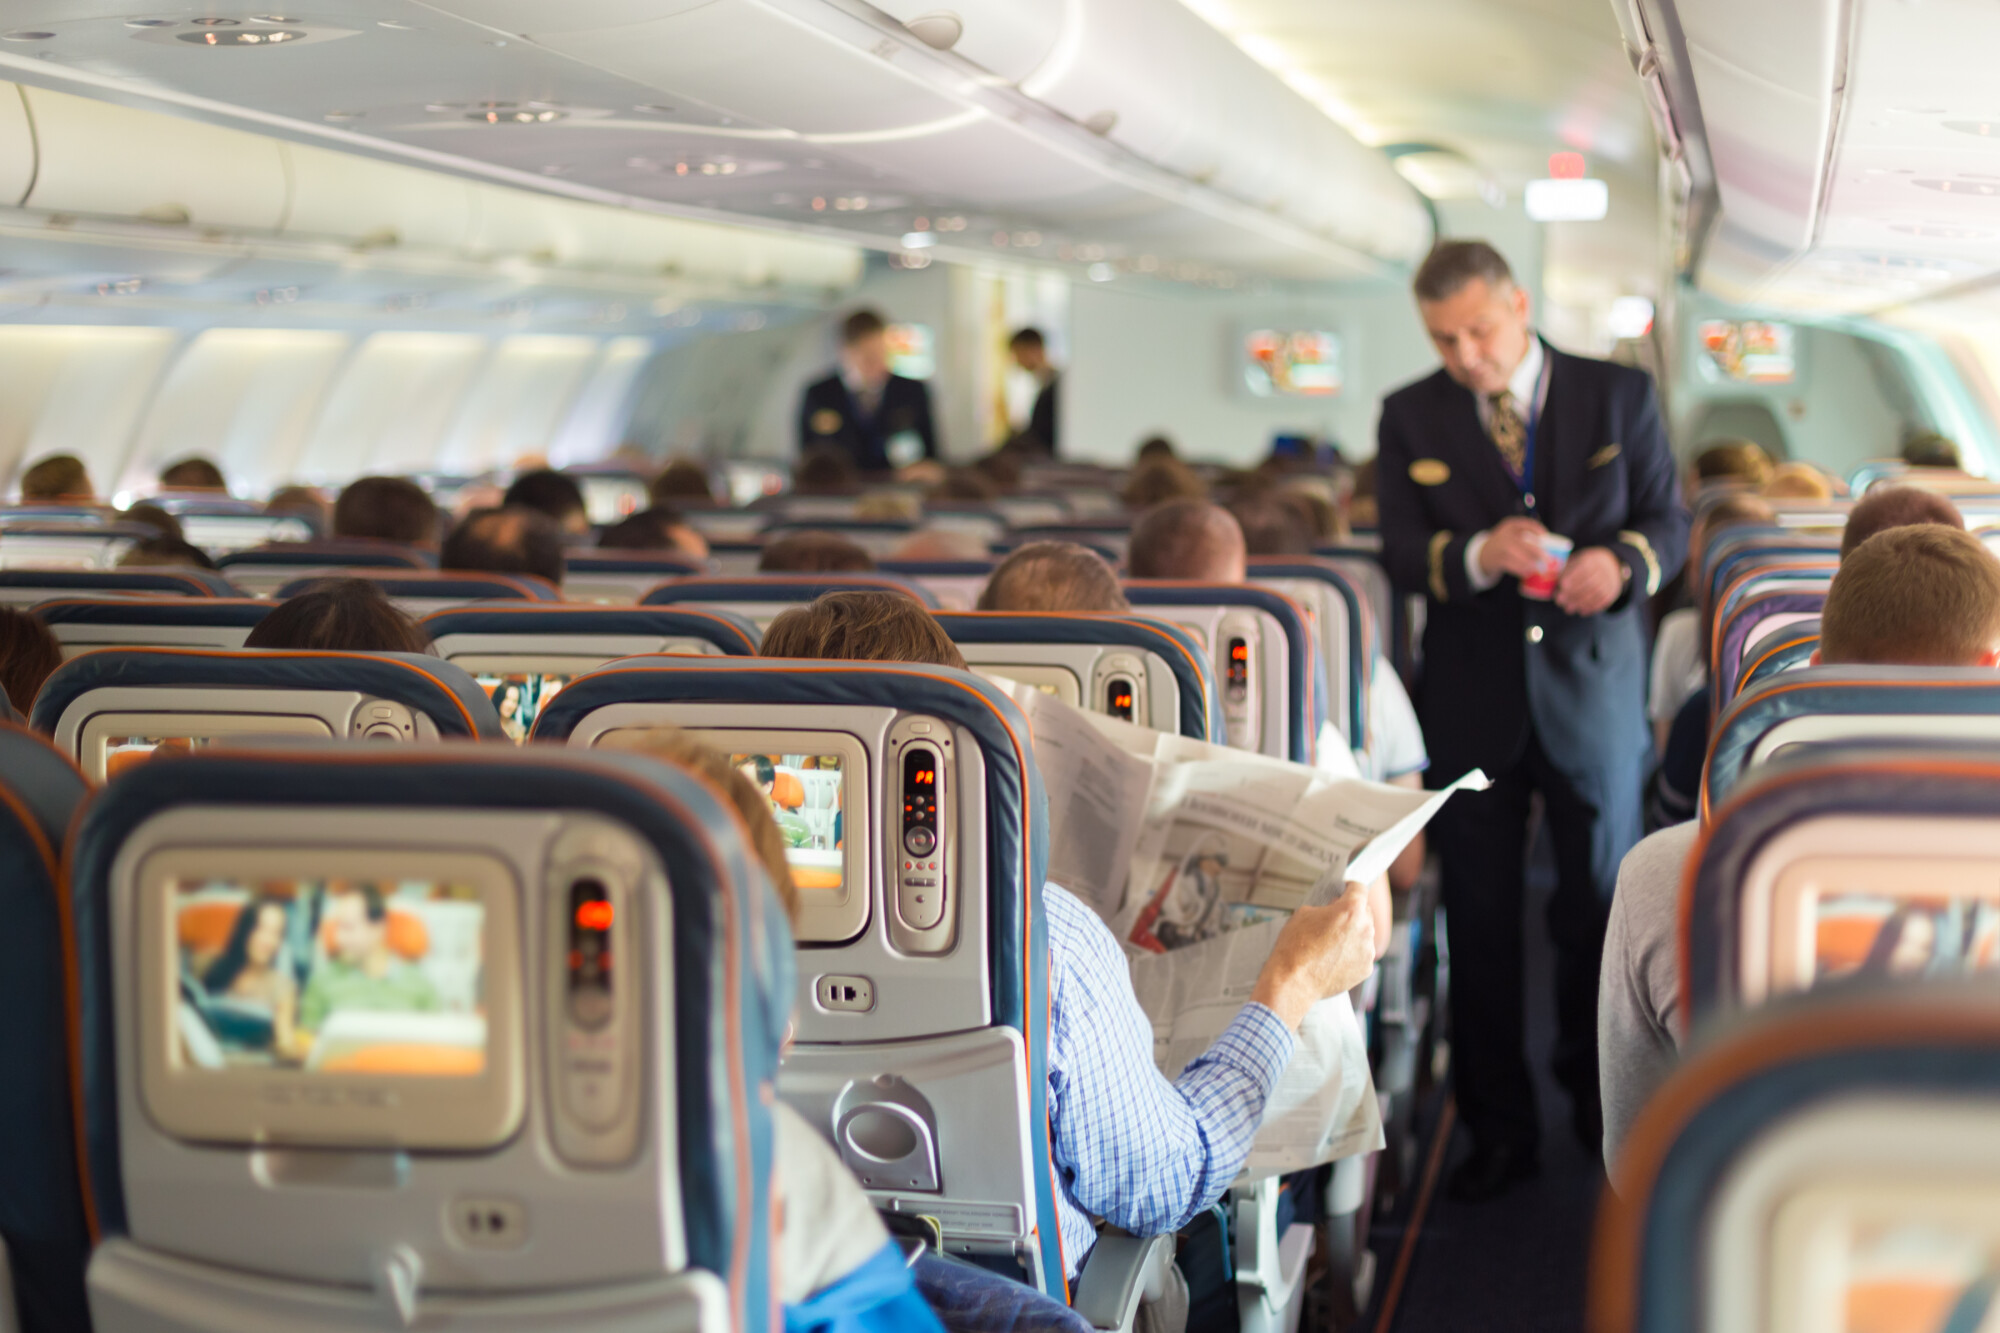 Comment bien choisir sa place en avion?